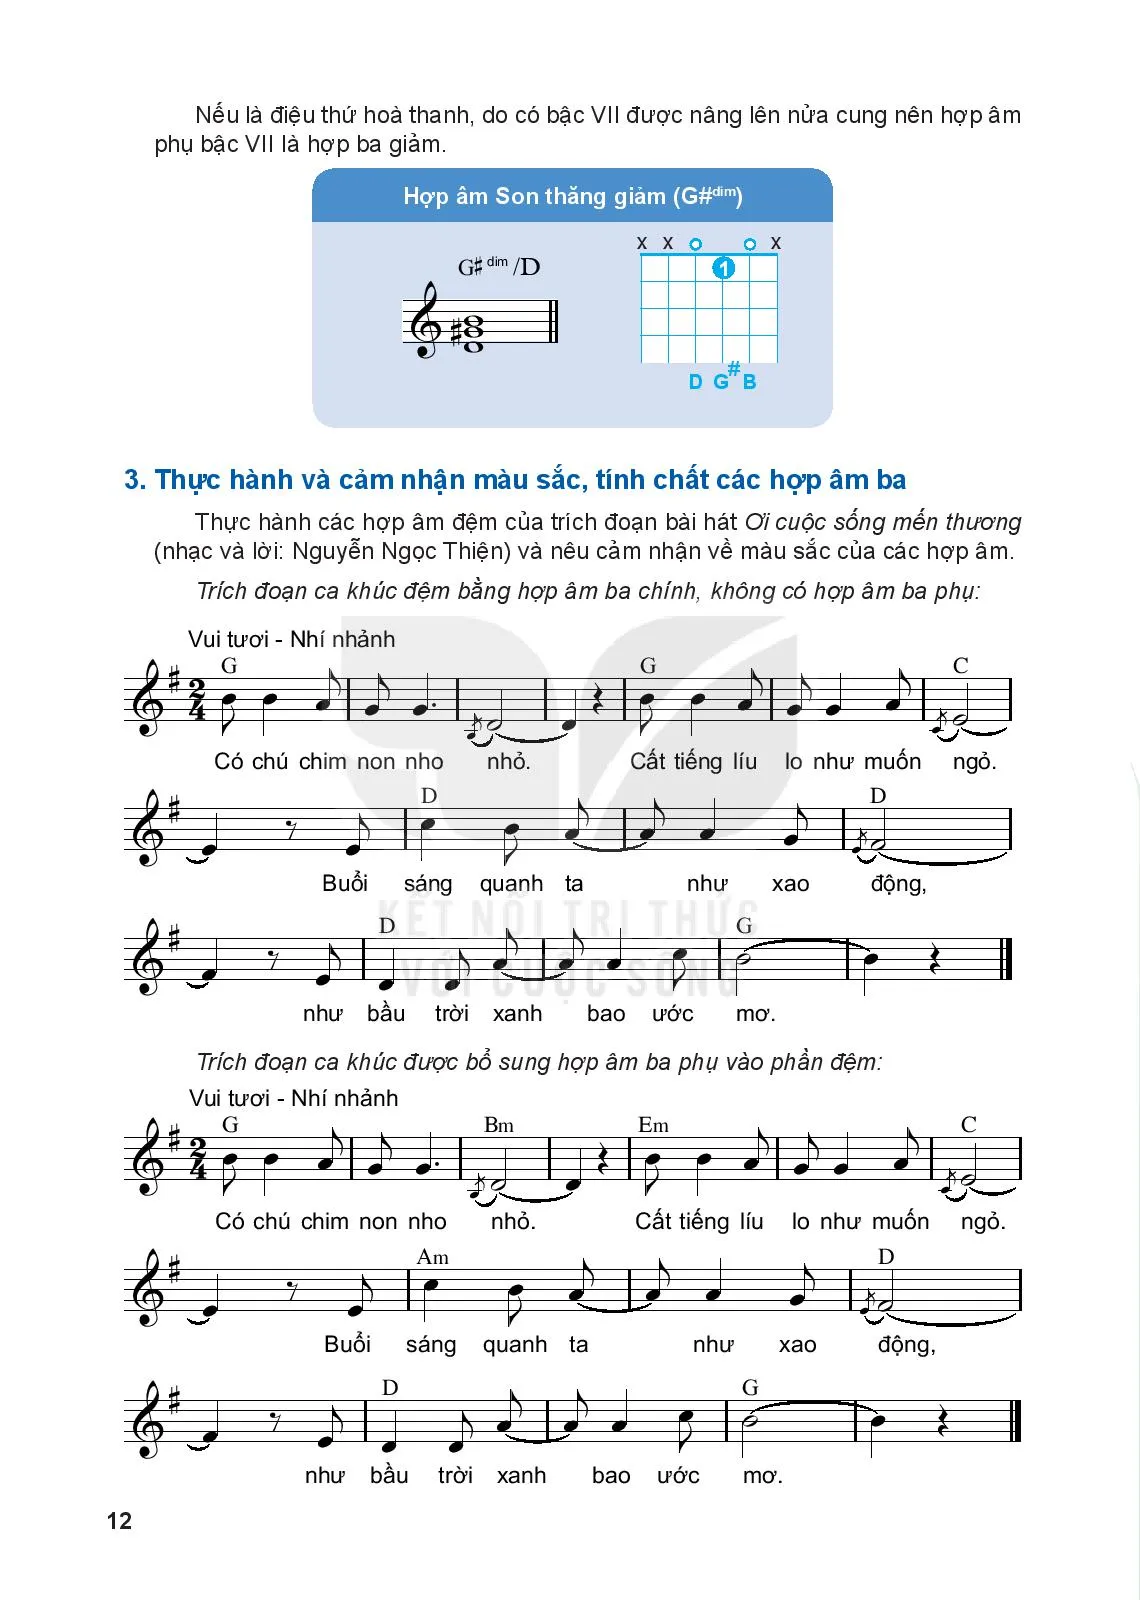 Bài 2: Các hợp âm ba phụ trong điệu trưởng và điệu thứ